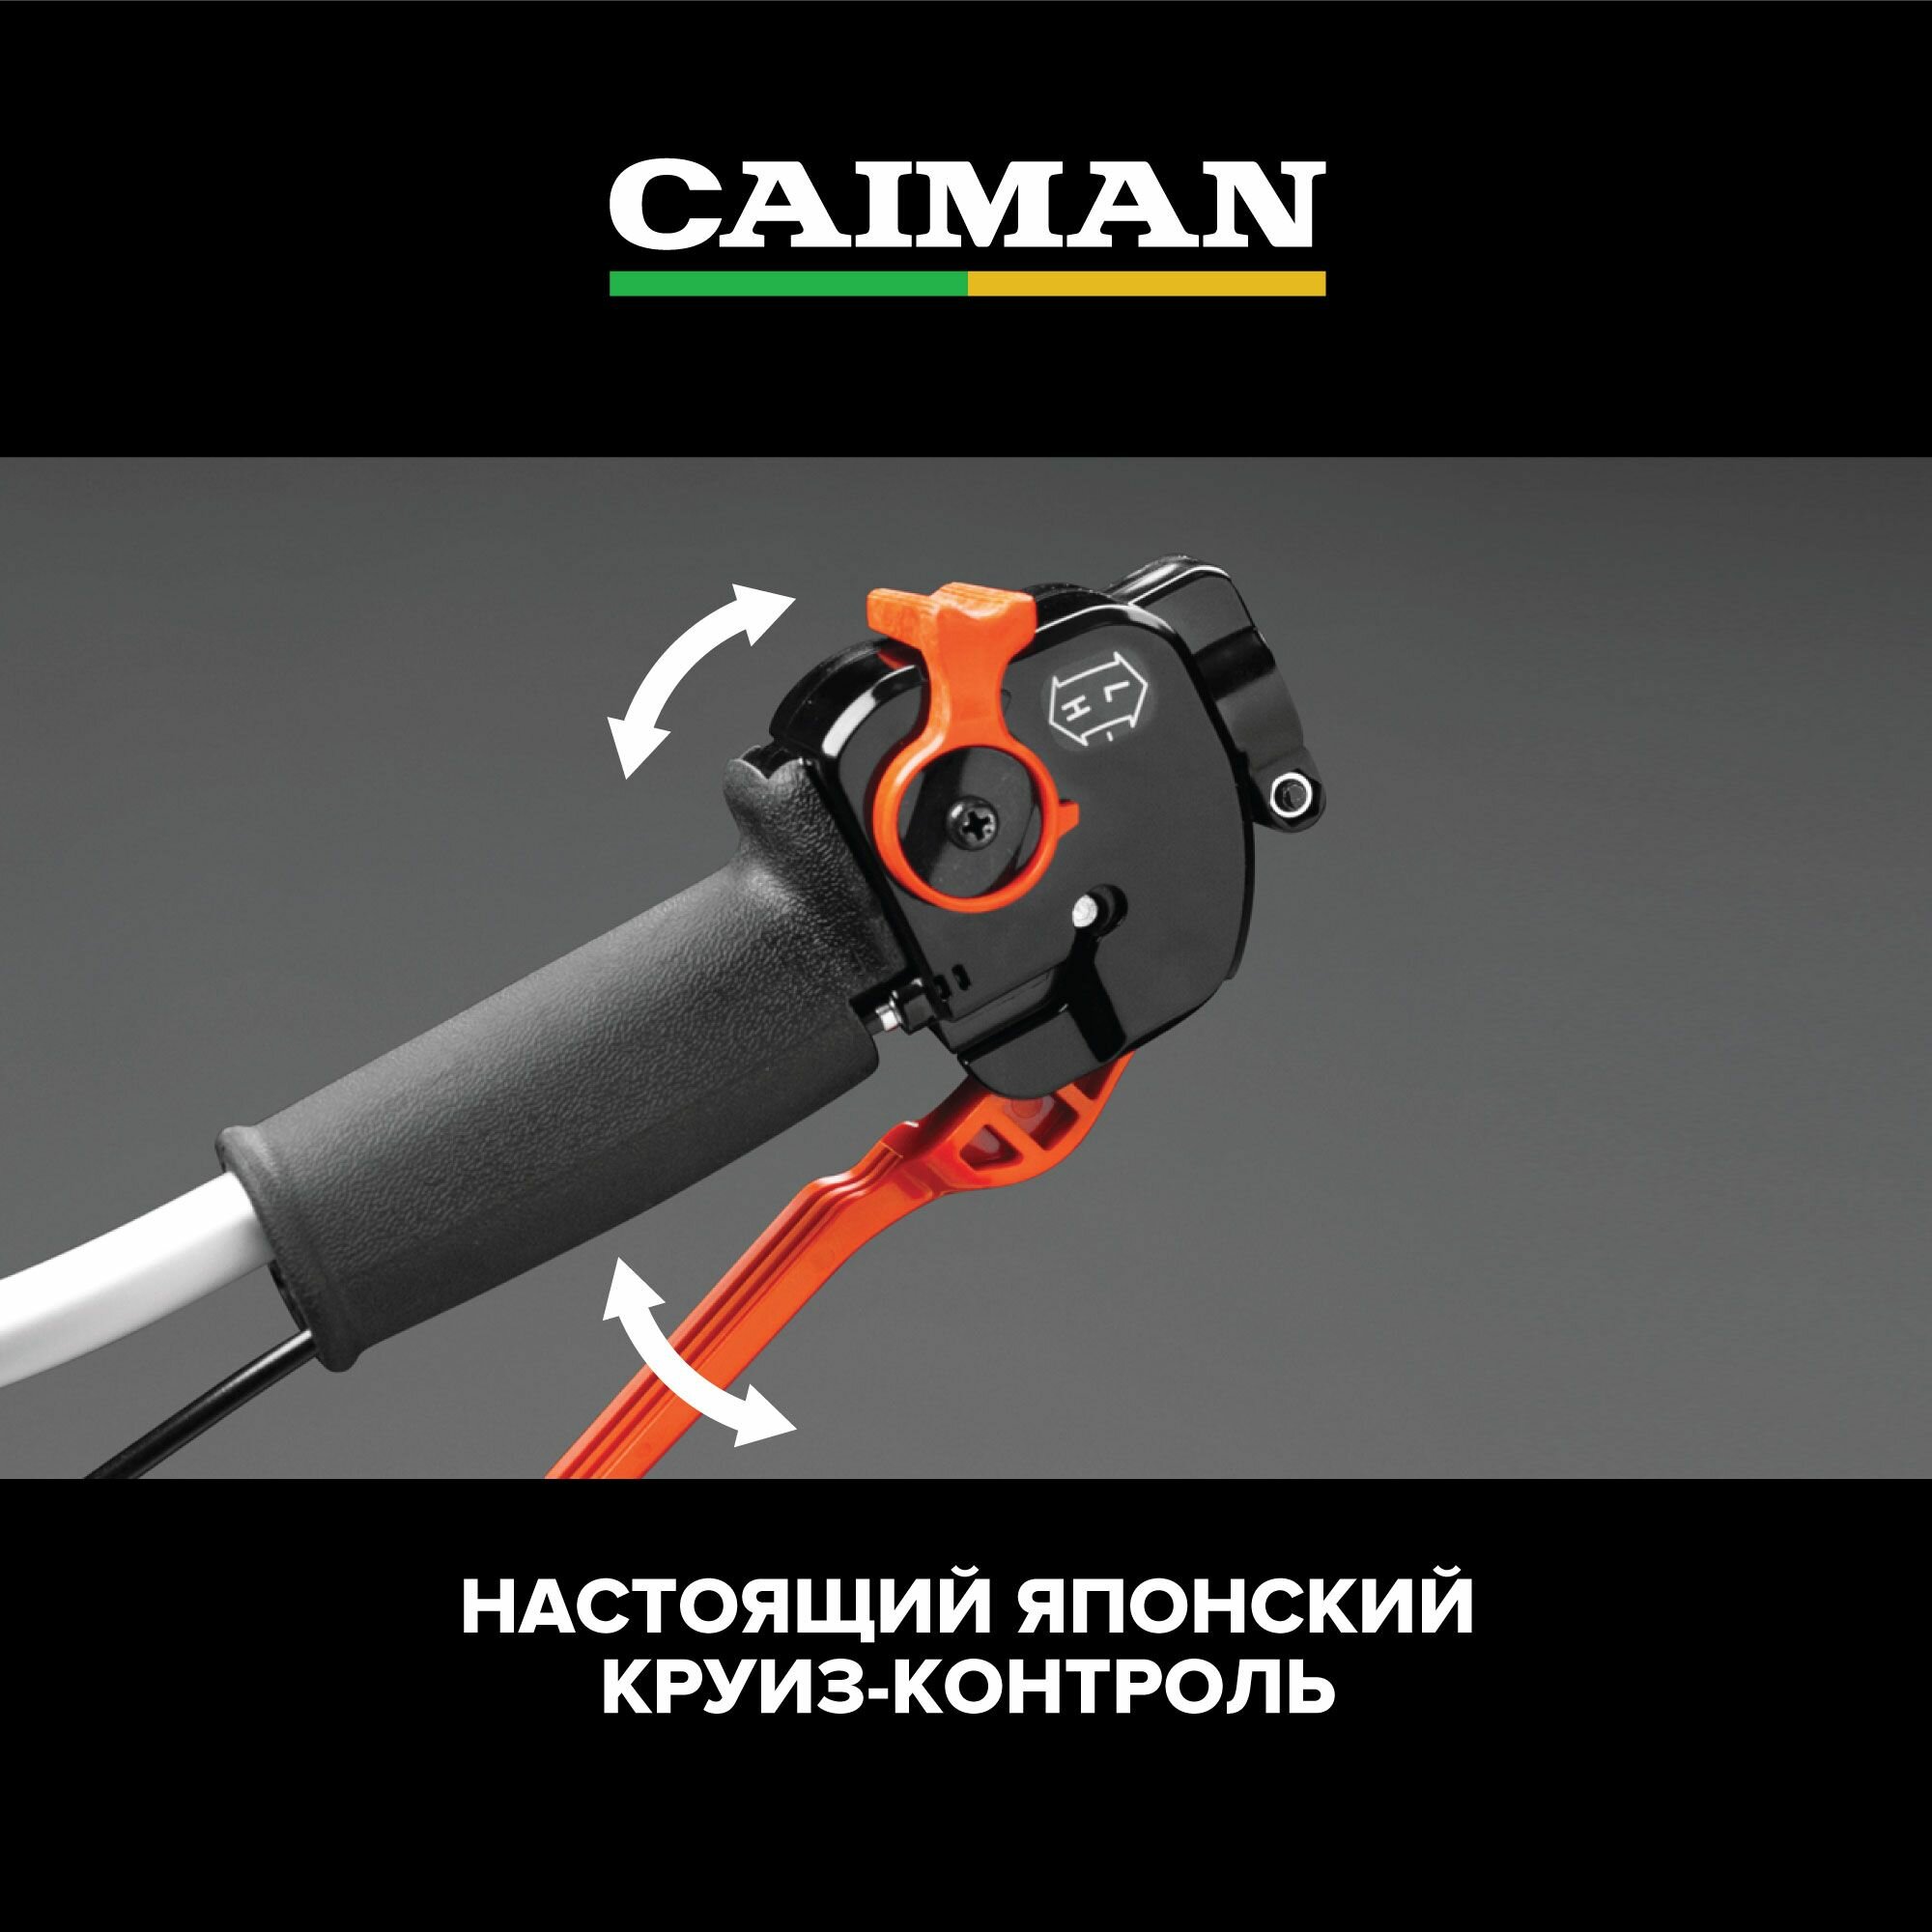 Триммер бензиновый CAIMAN WX21 0.7 л. с, 4.5 кг (диск для травы 230 мм + леска 2.4 мм)